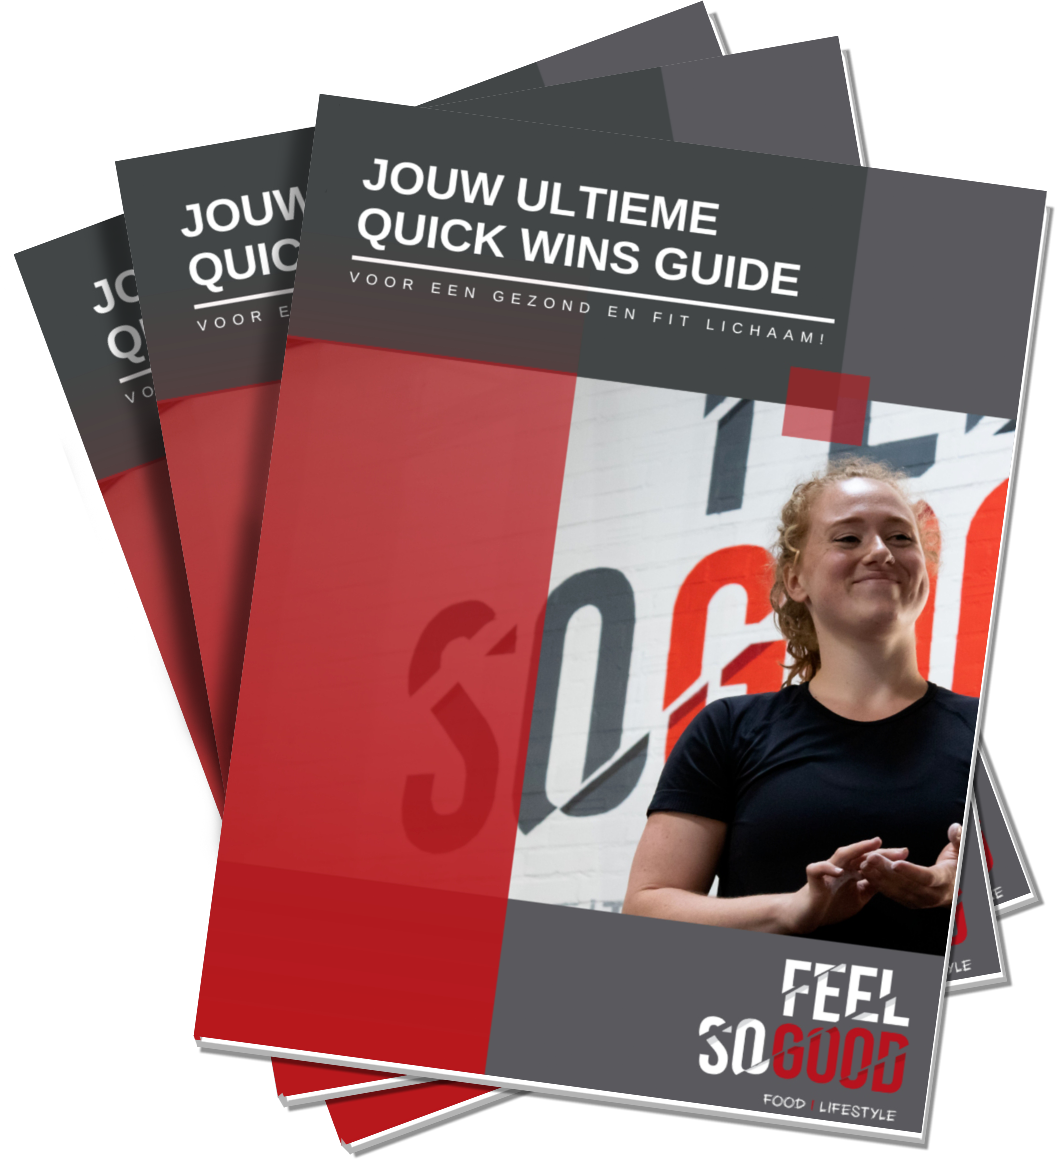 Download jouw quick wins guide voor ene gezond en fit lichaam